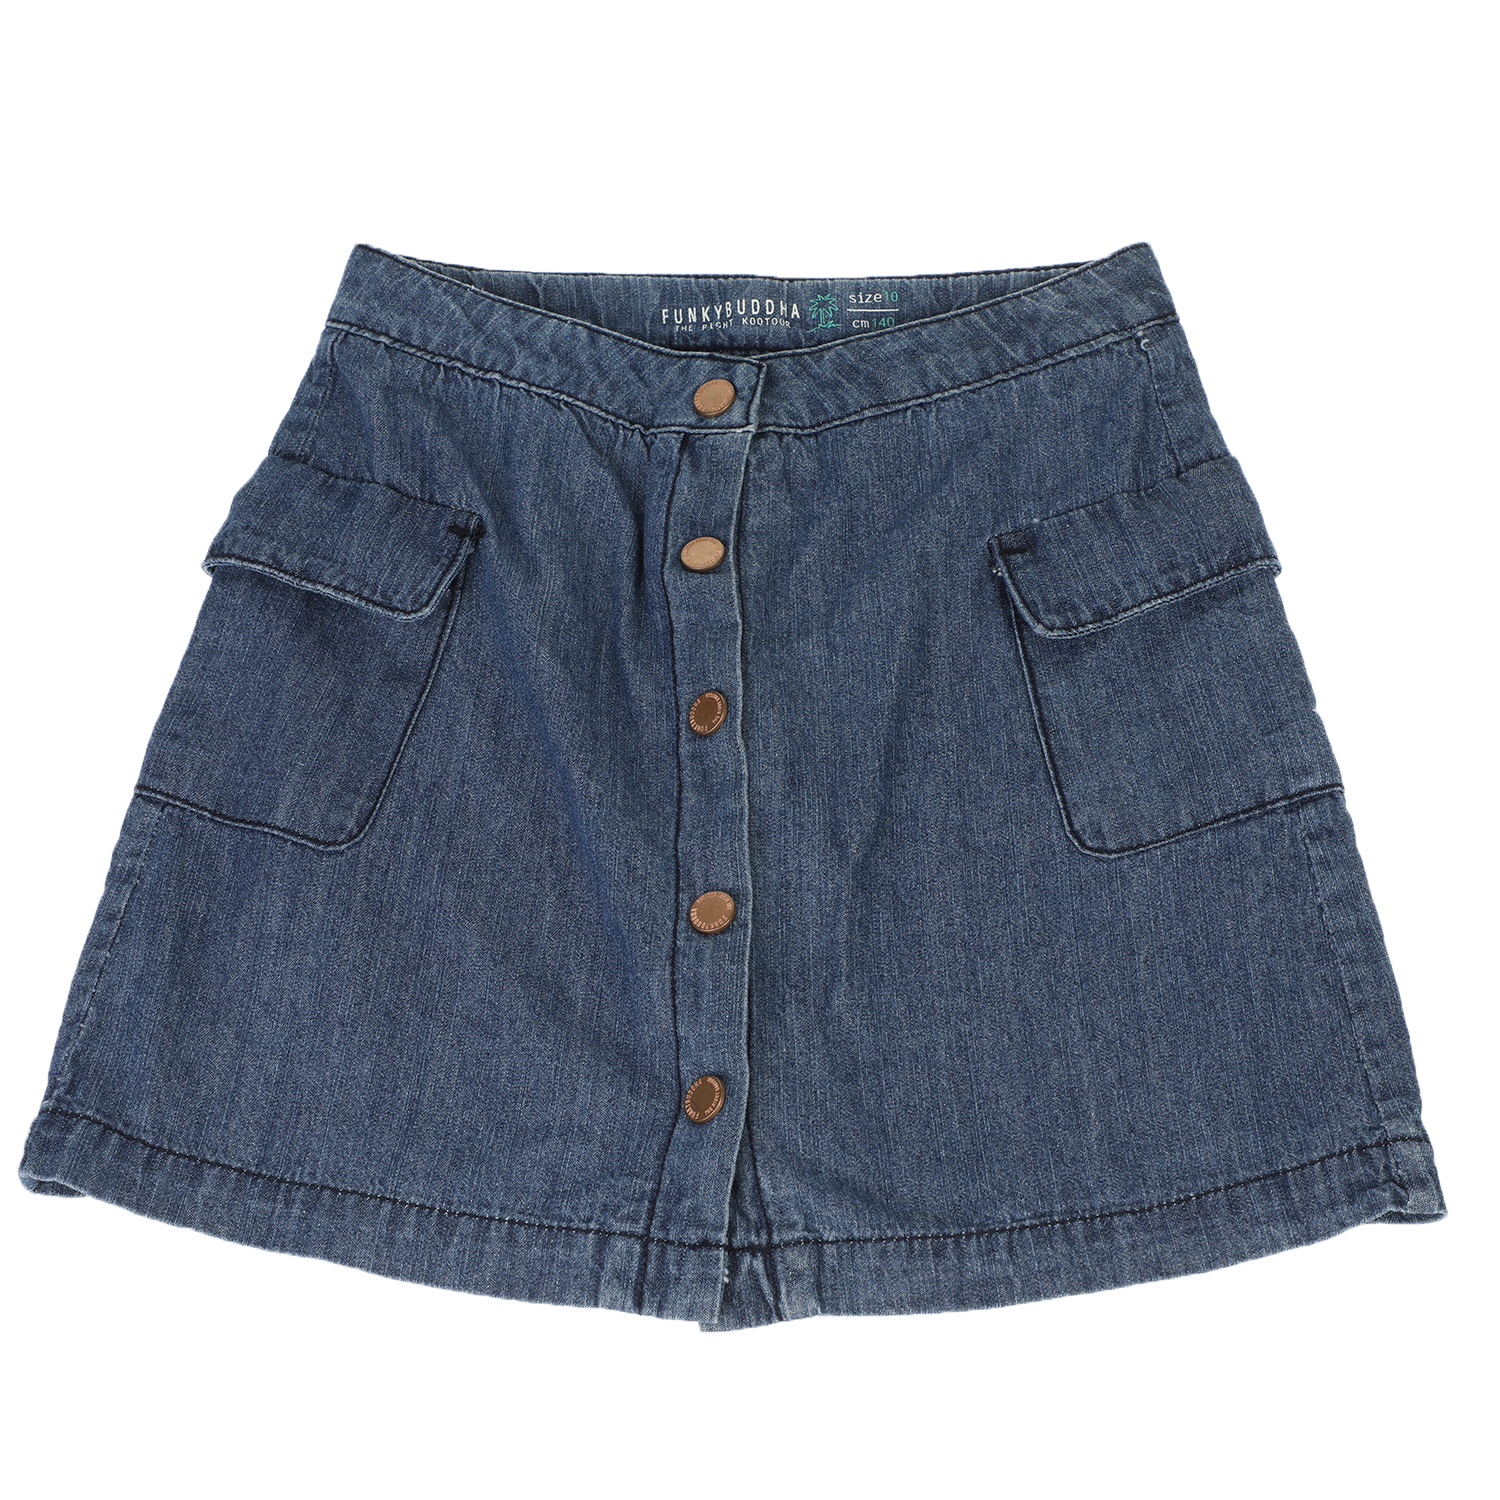 Παιδικά/Girls/Ρούχα/Φούστες FUNKY BUDDHA - Παιδική jean φούστα FUNKY BUDDHA μπλε